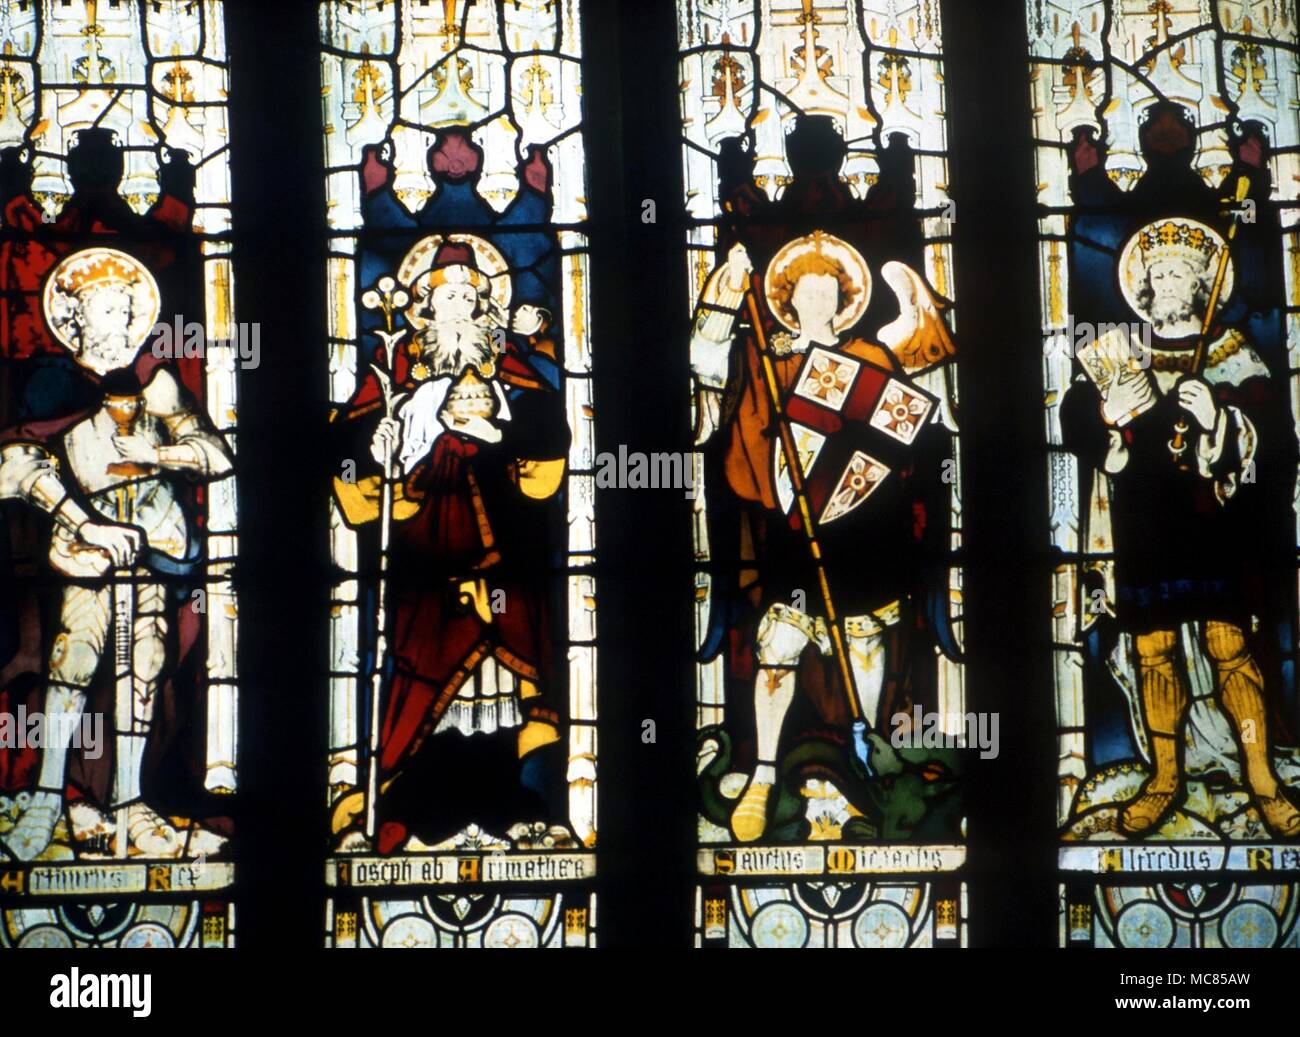 Vier Zahlen mit den Arthurian Zyklen - von links nach rechts, King Arthur, Joseph von Arimathäa, St. Michael und König Alfred. Glasmalereien des 19. Jahrhunderts in St James', kilkhampton. Stockfoto